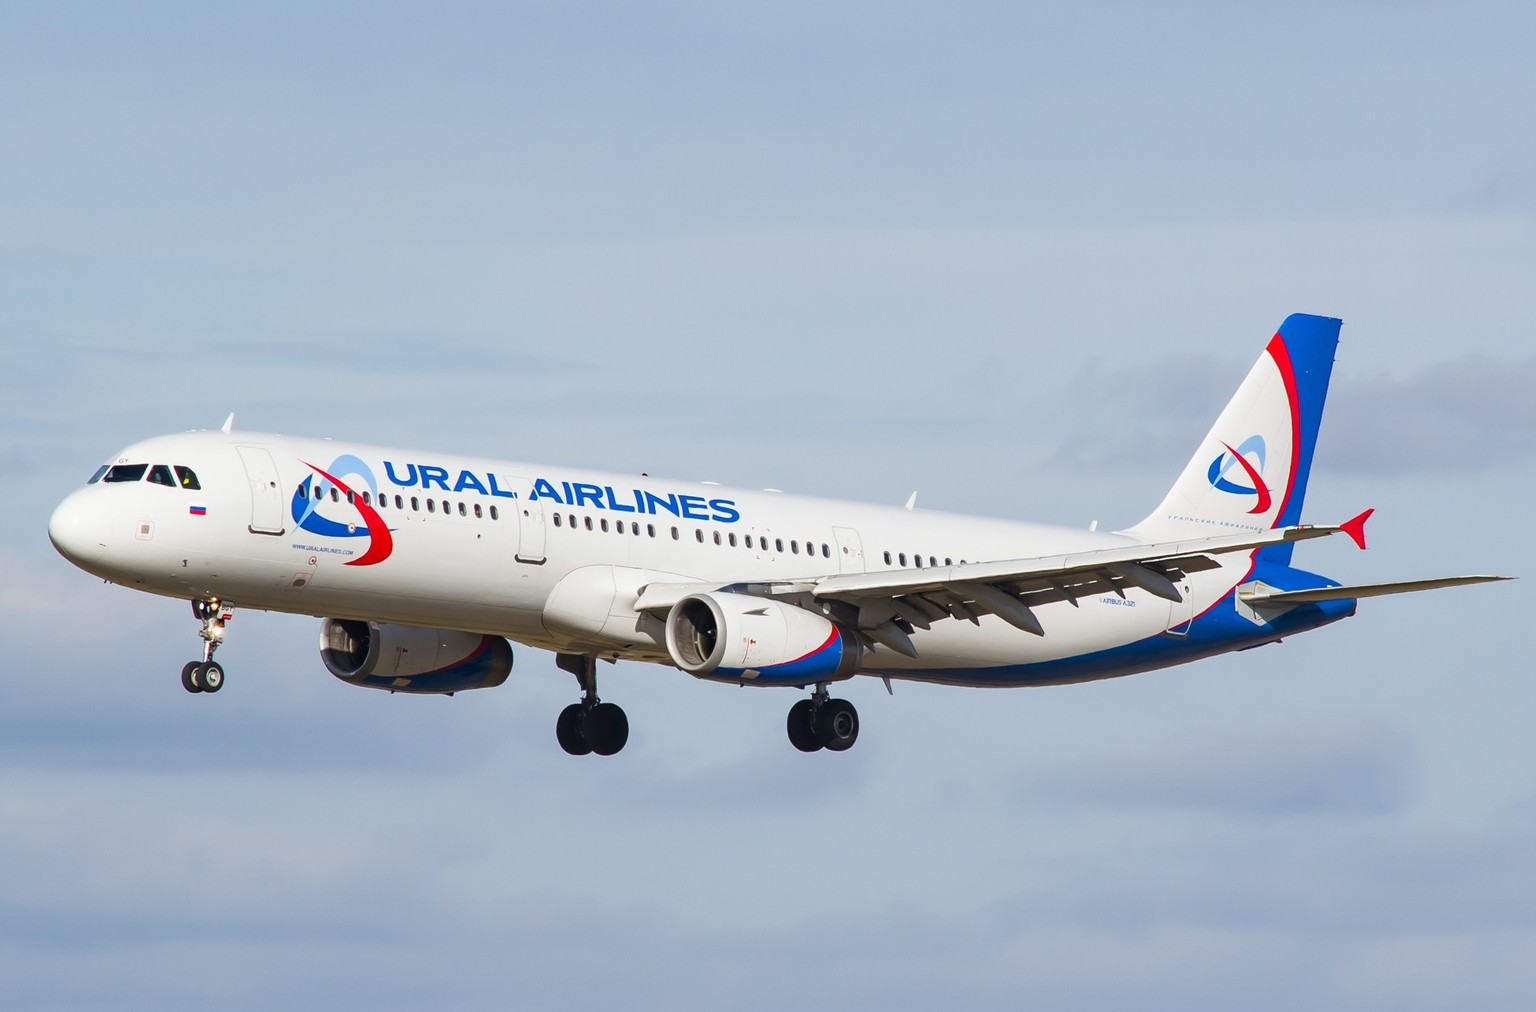 Flugzeug der Fluggesellschaft Ural Airlines.